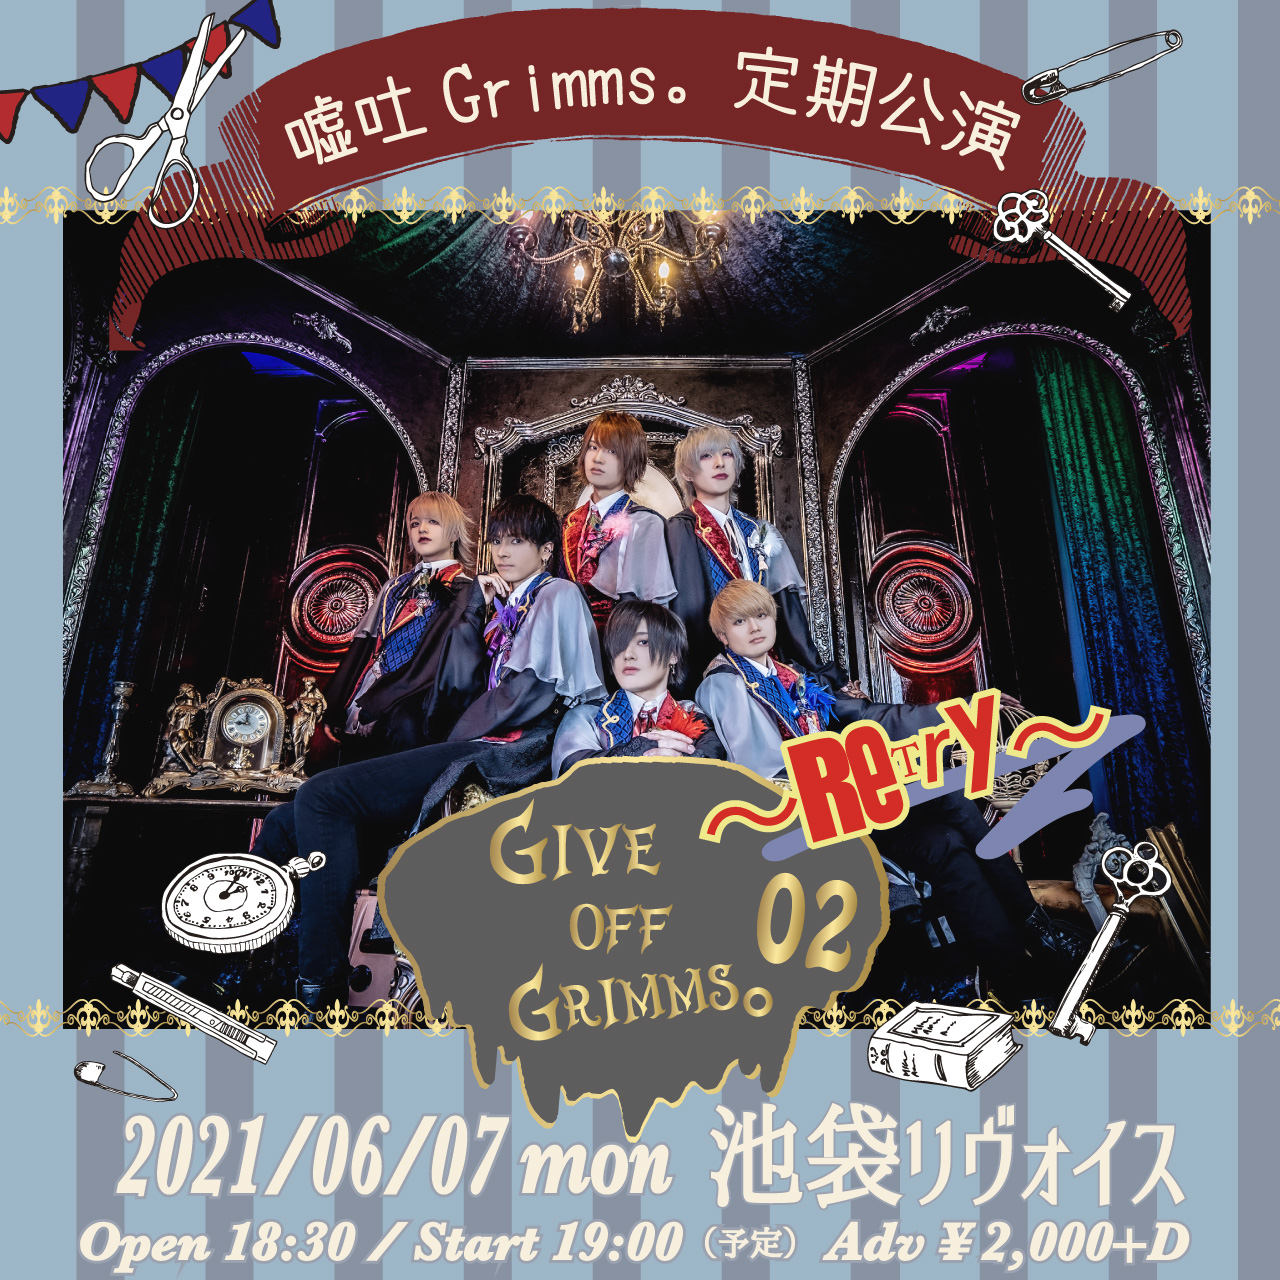 嘘吐Grimms。定期公演 『Give Off Grimms。02〜Retry〜』